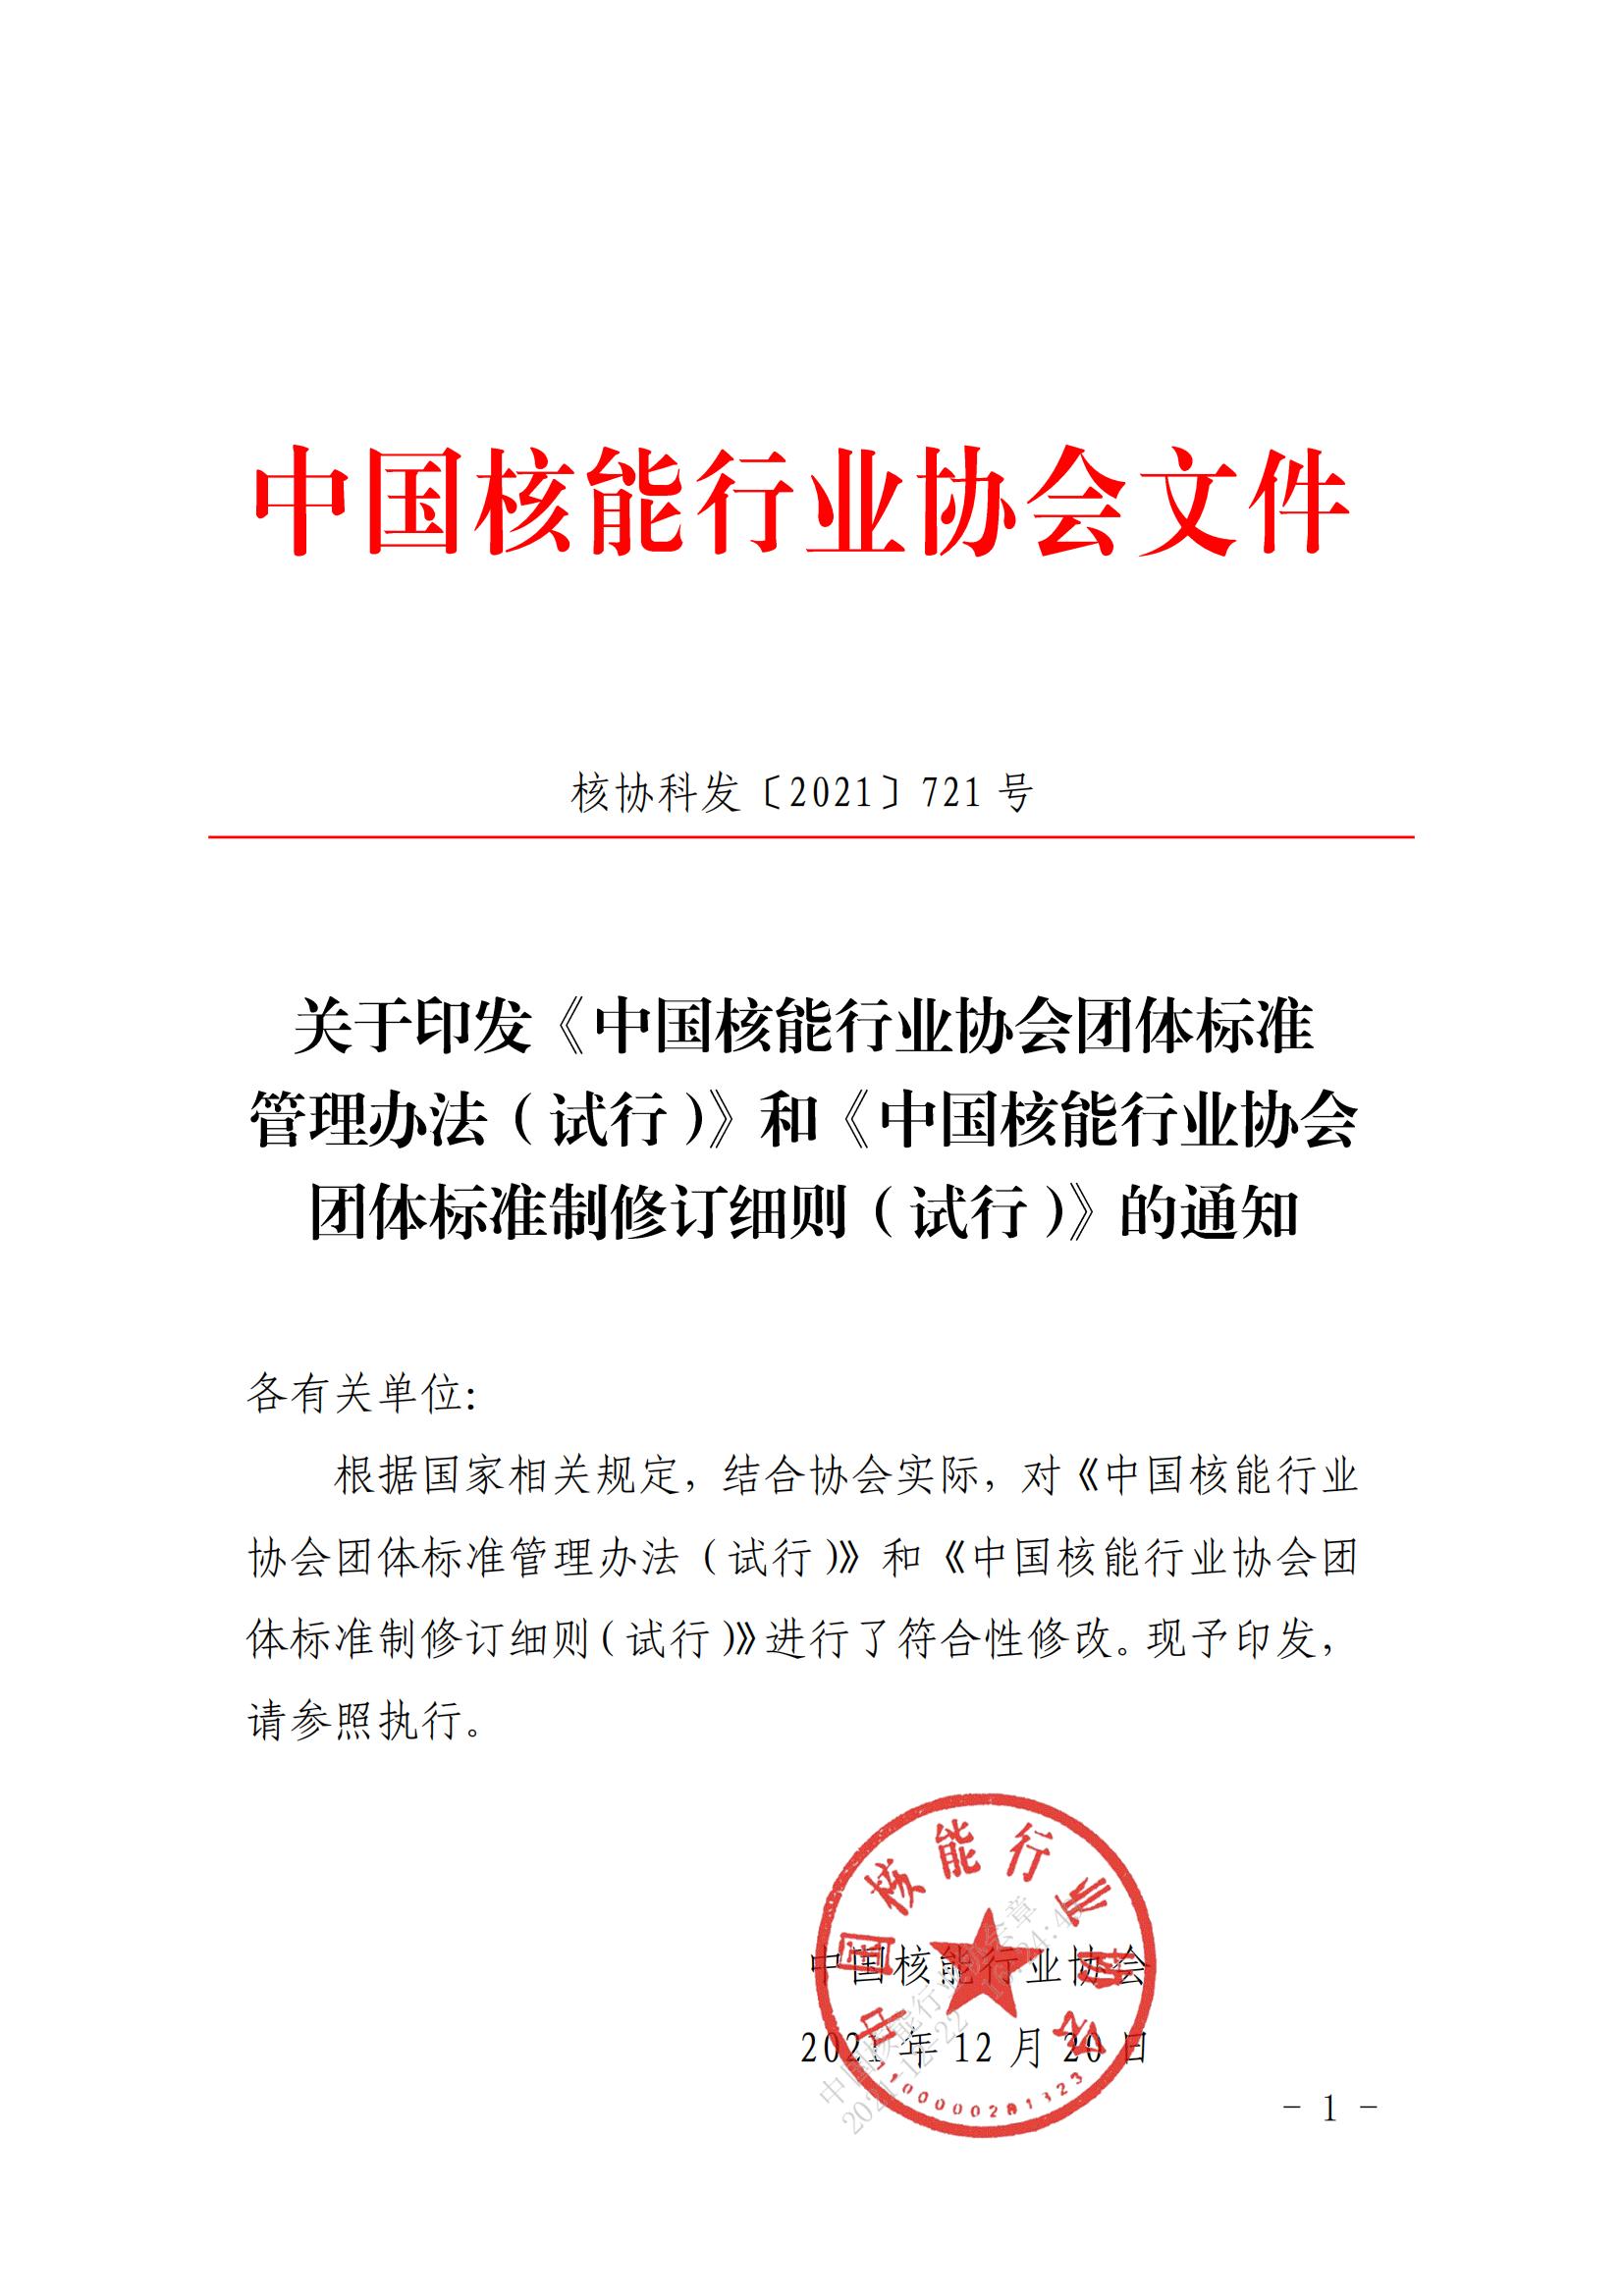 关于印发《中国核能行业协会团体标准管理办法（试行）》和《中国核能行业协会团体标准制修订细则（试行）》的通知_00.jpg